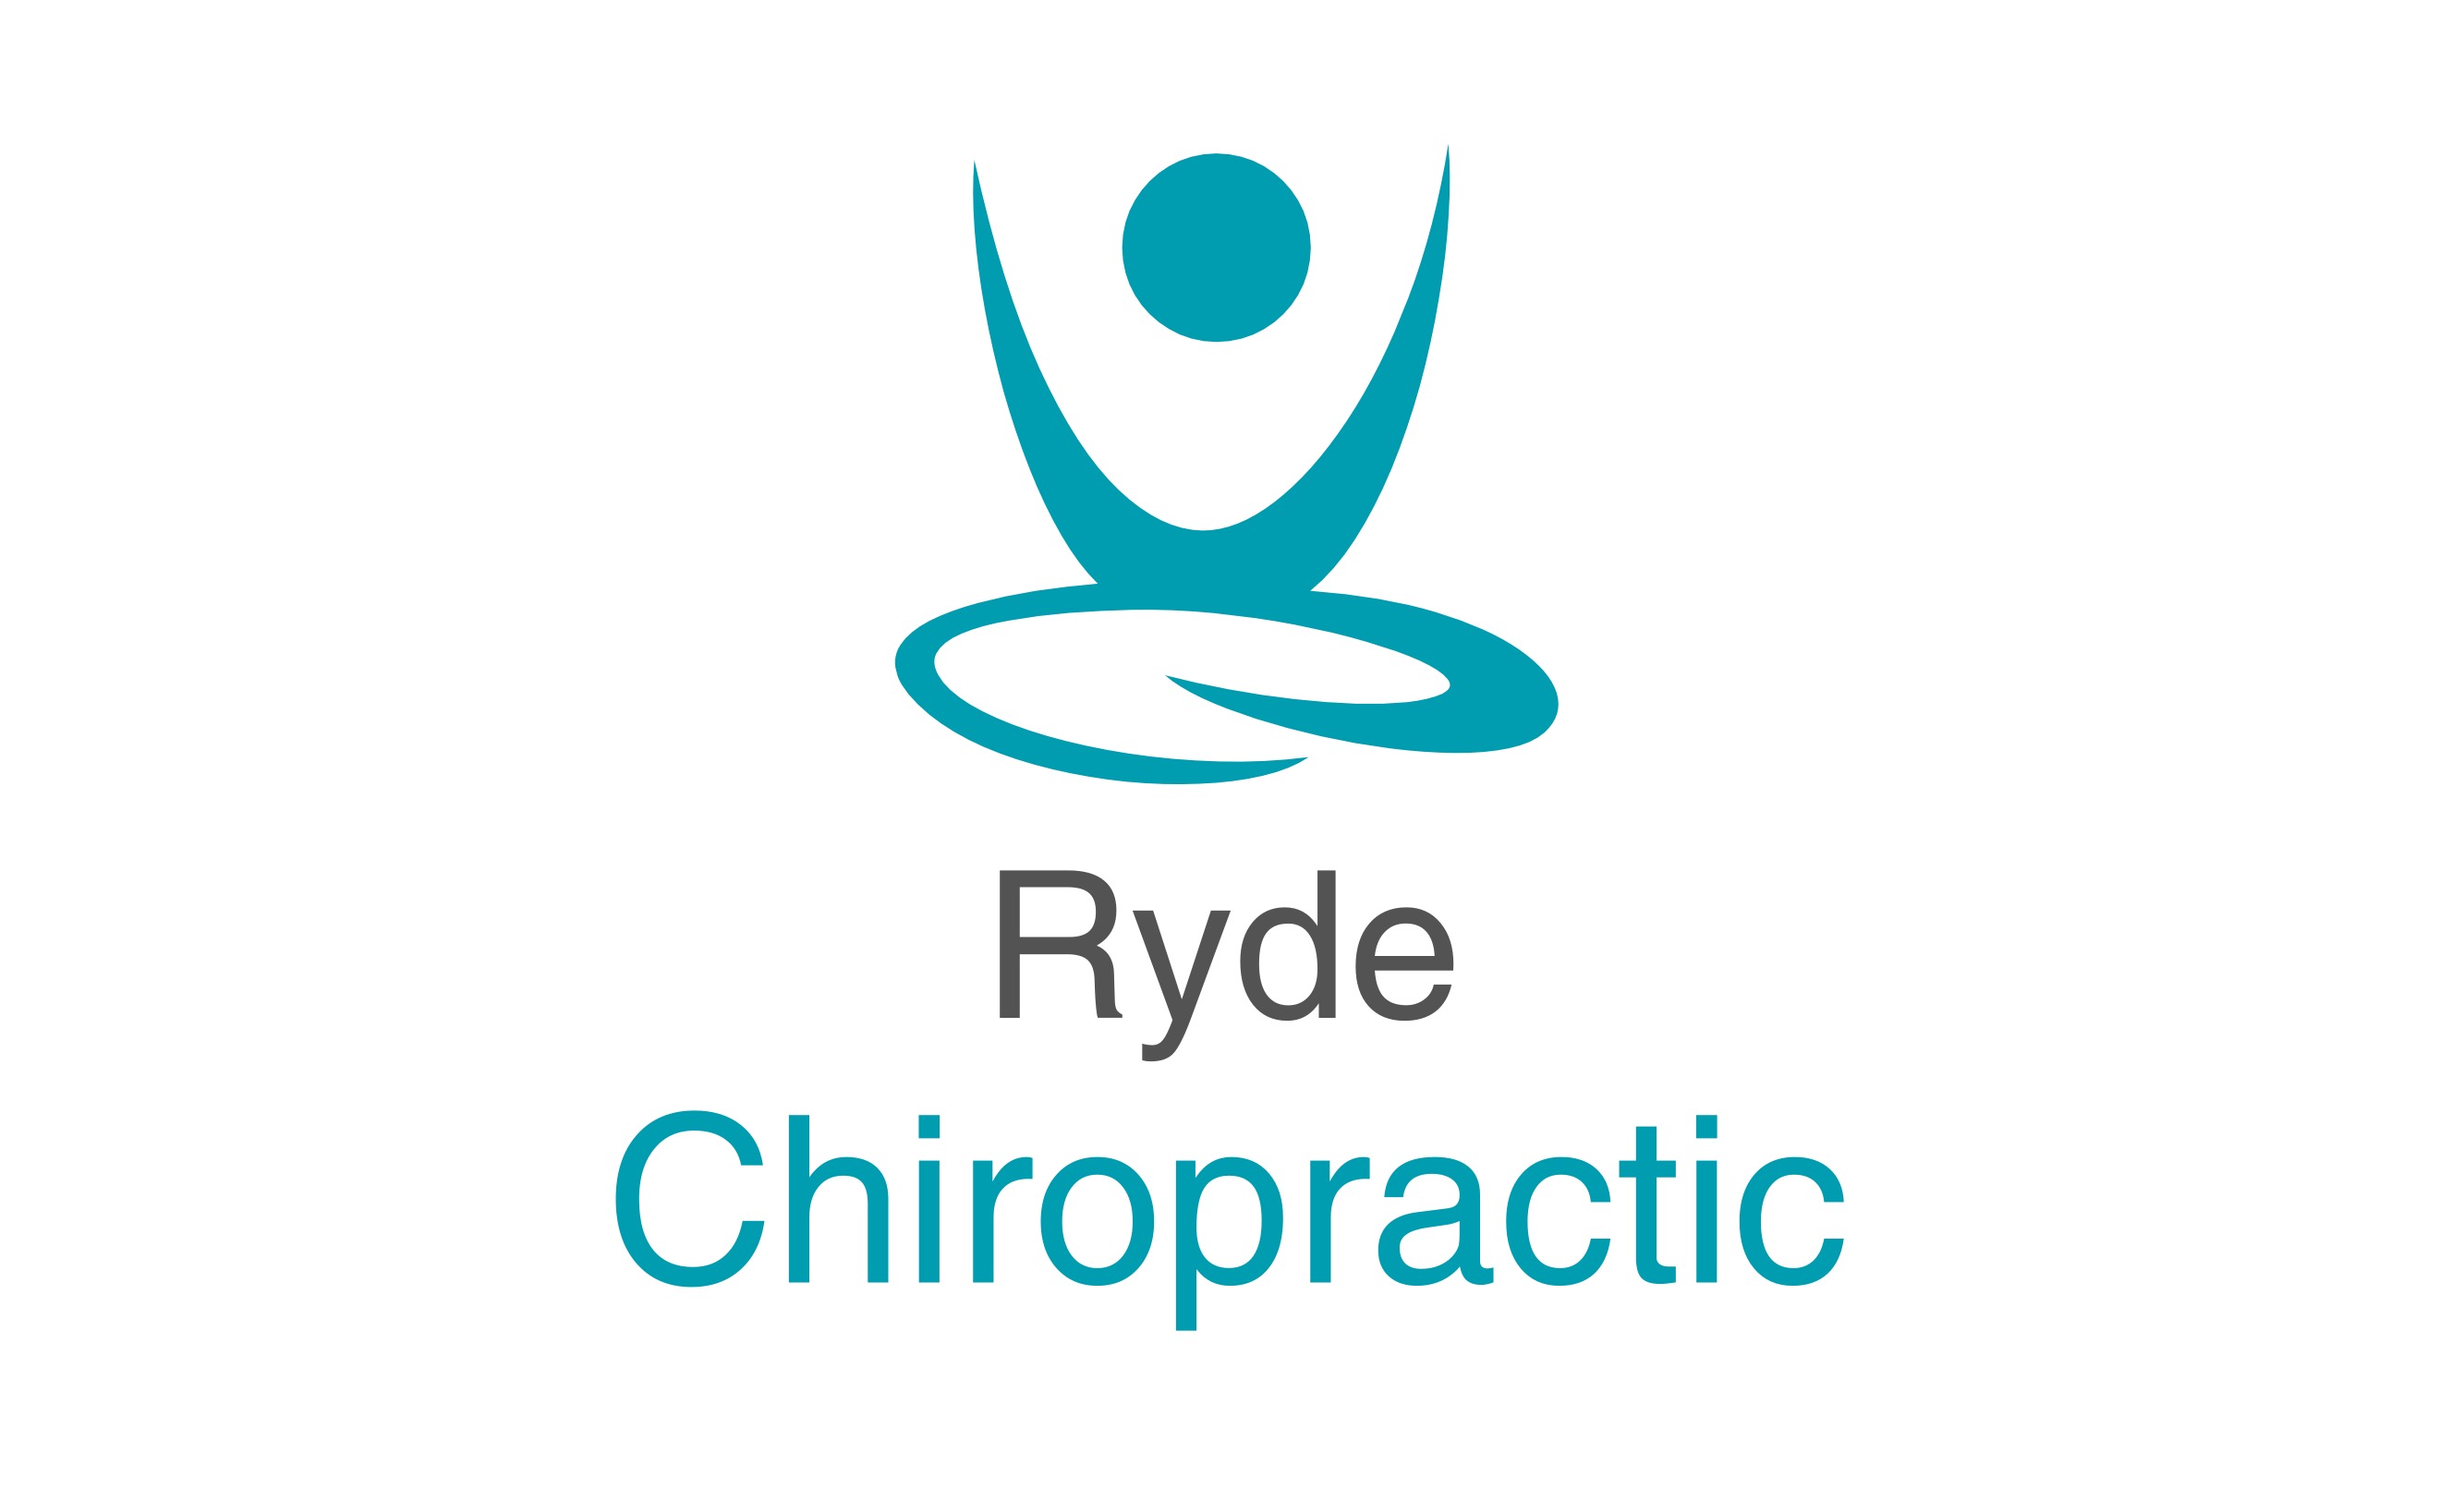 Ryde Chiropractic